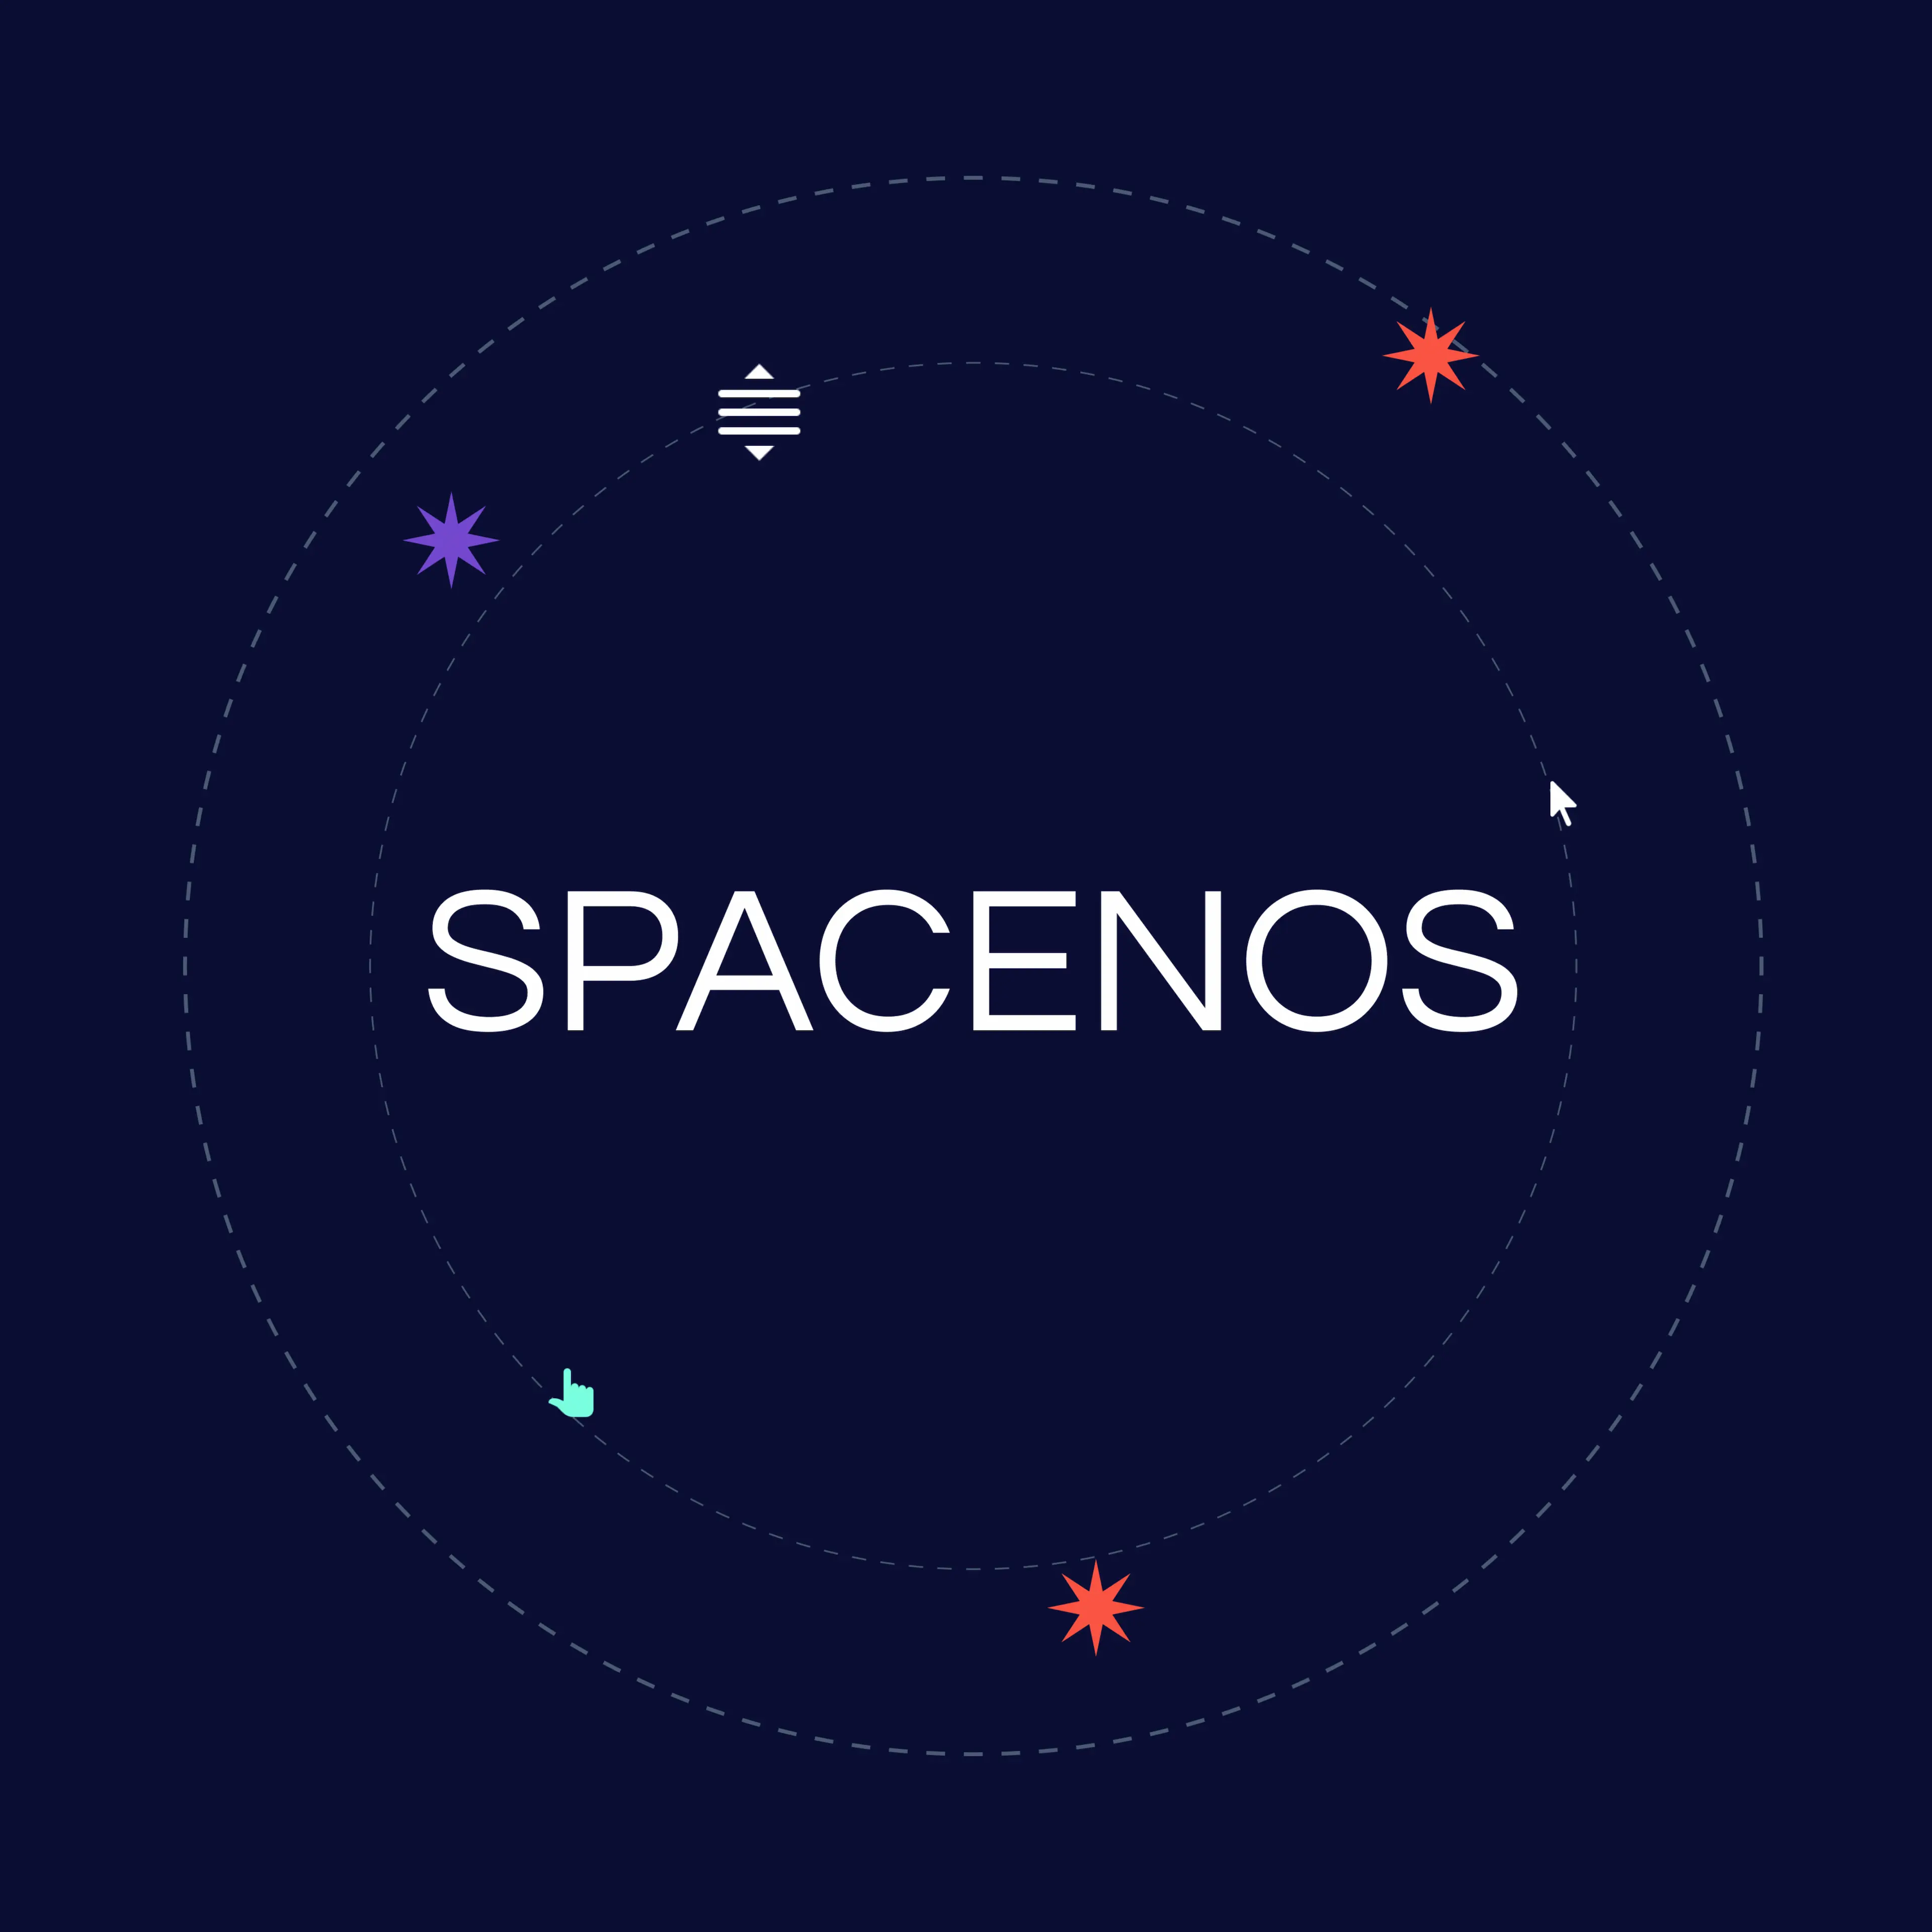 Spacenos's logo